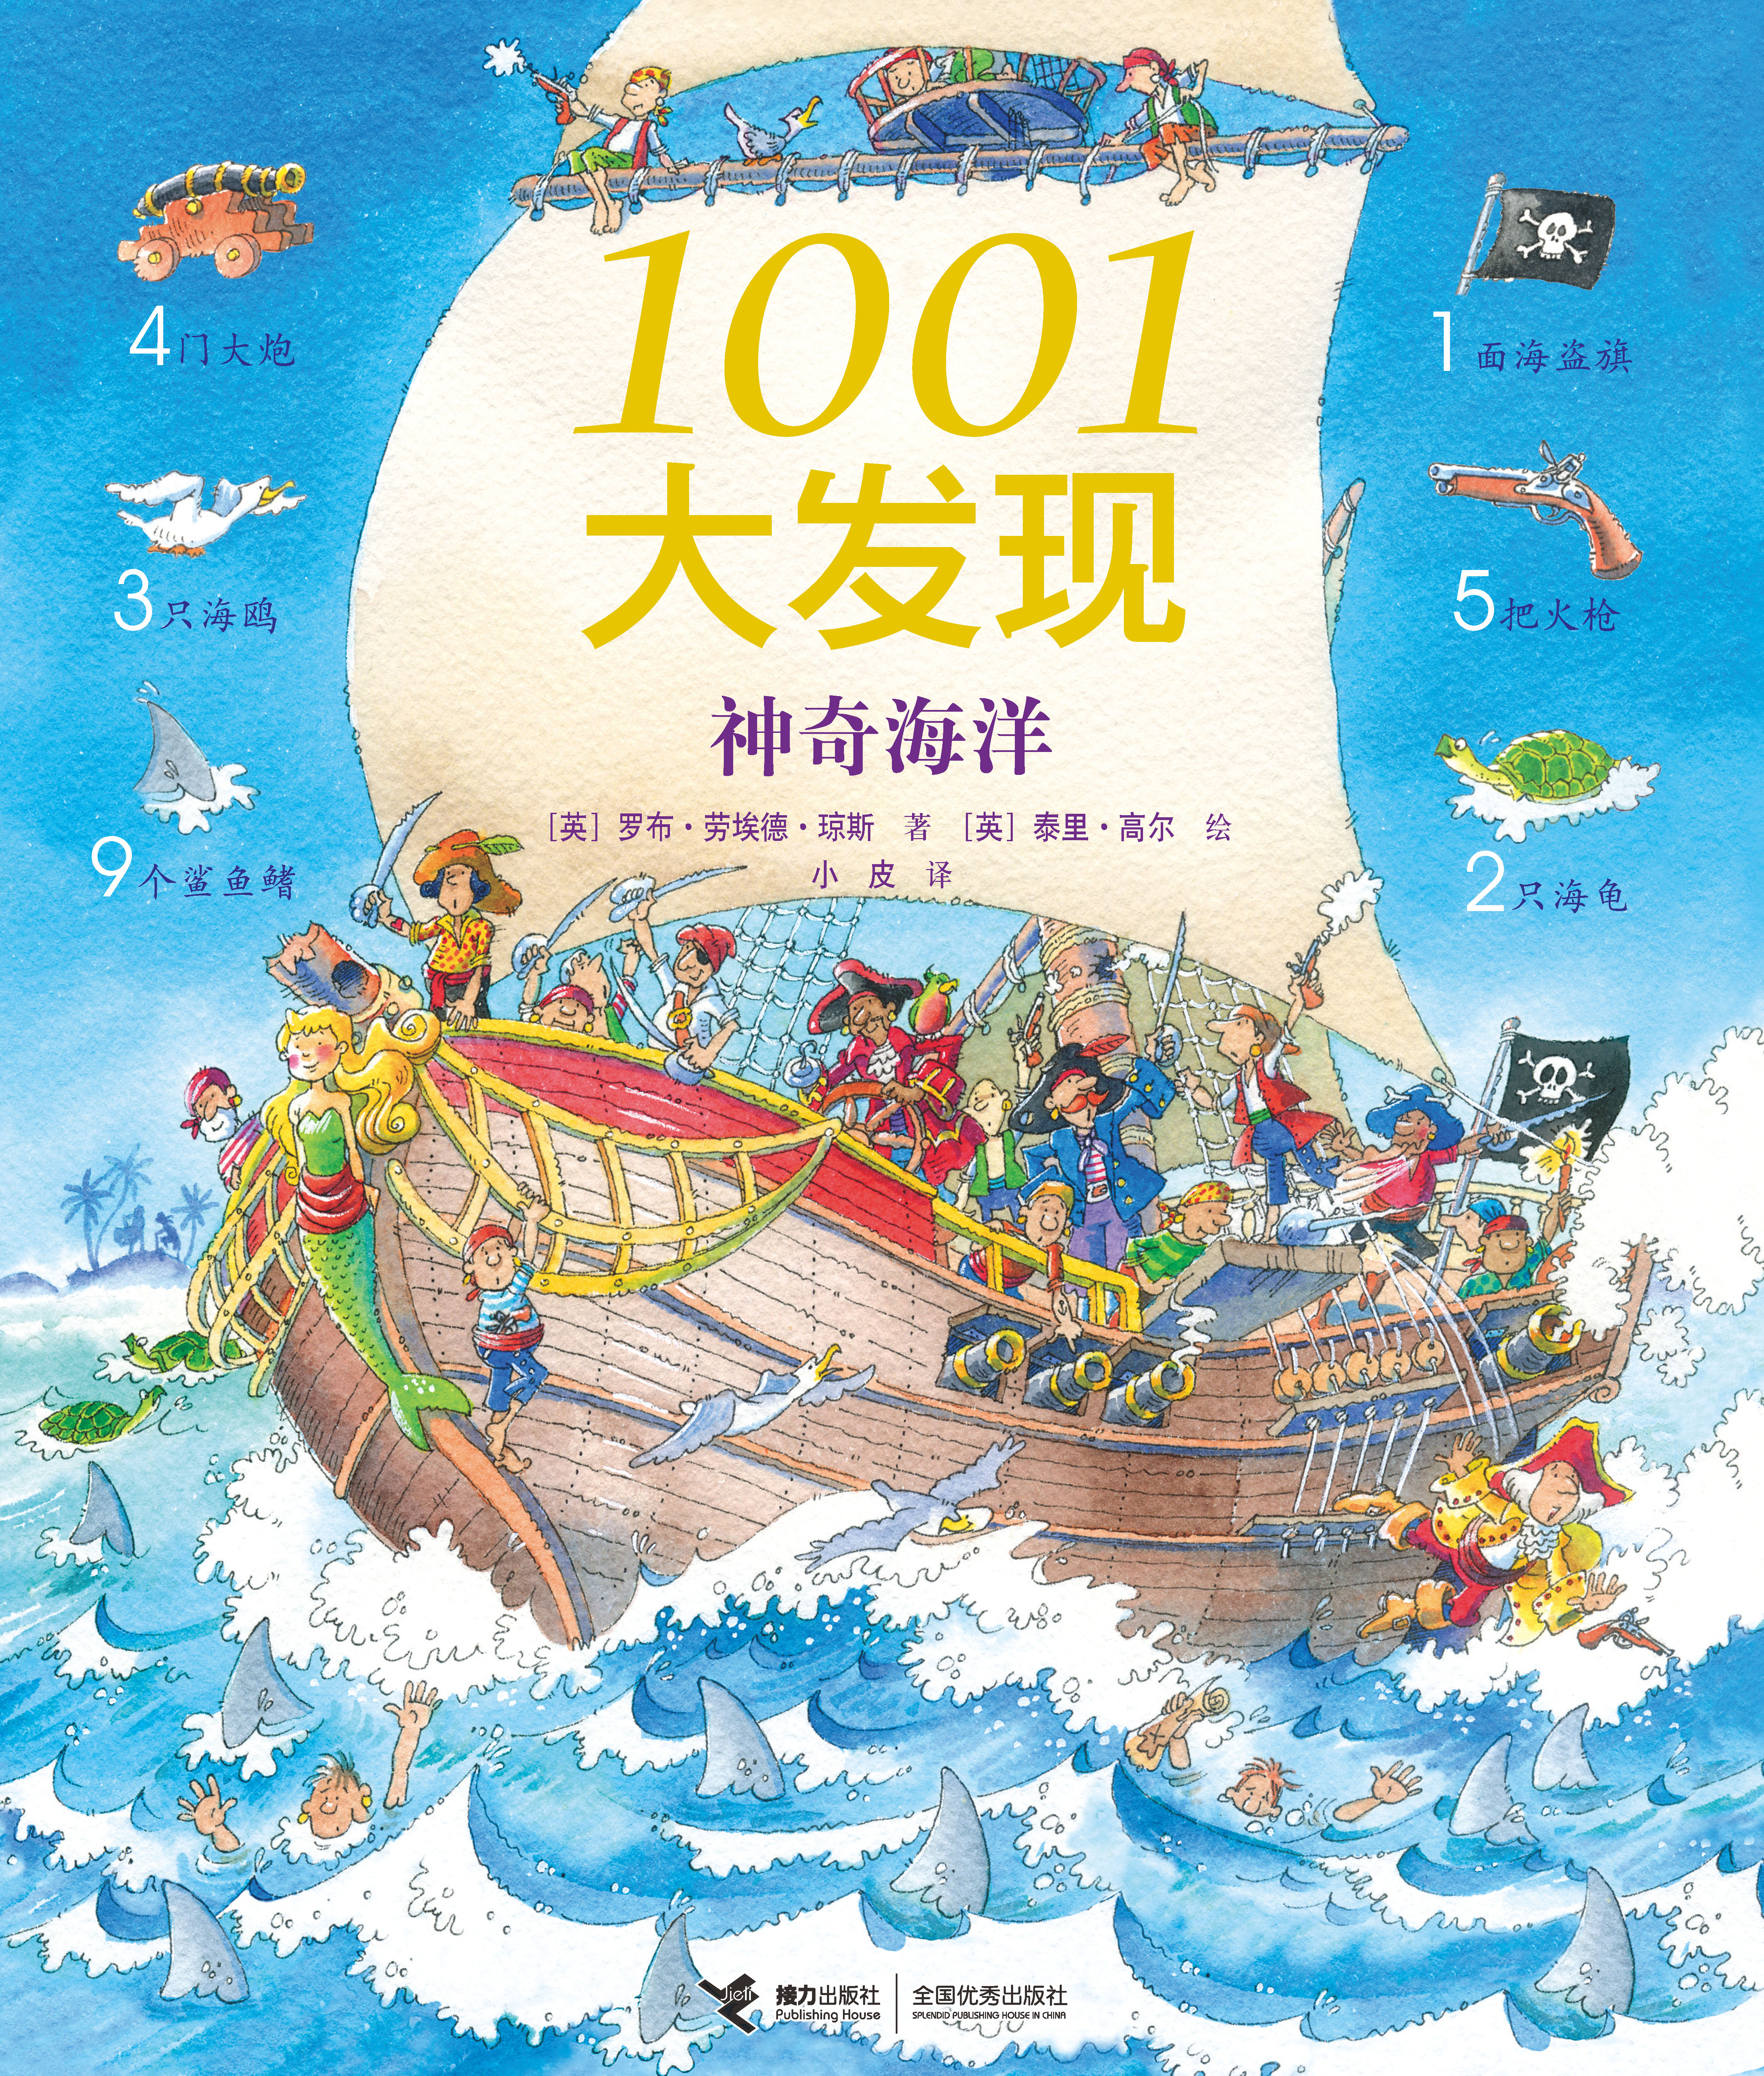 1001大发现:神奇海洋